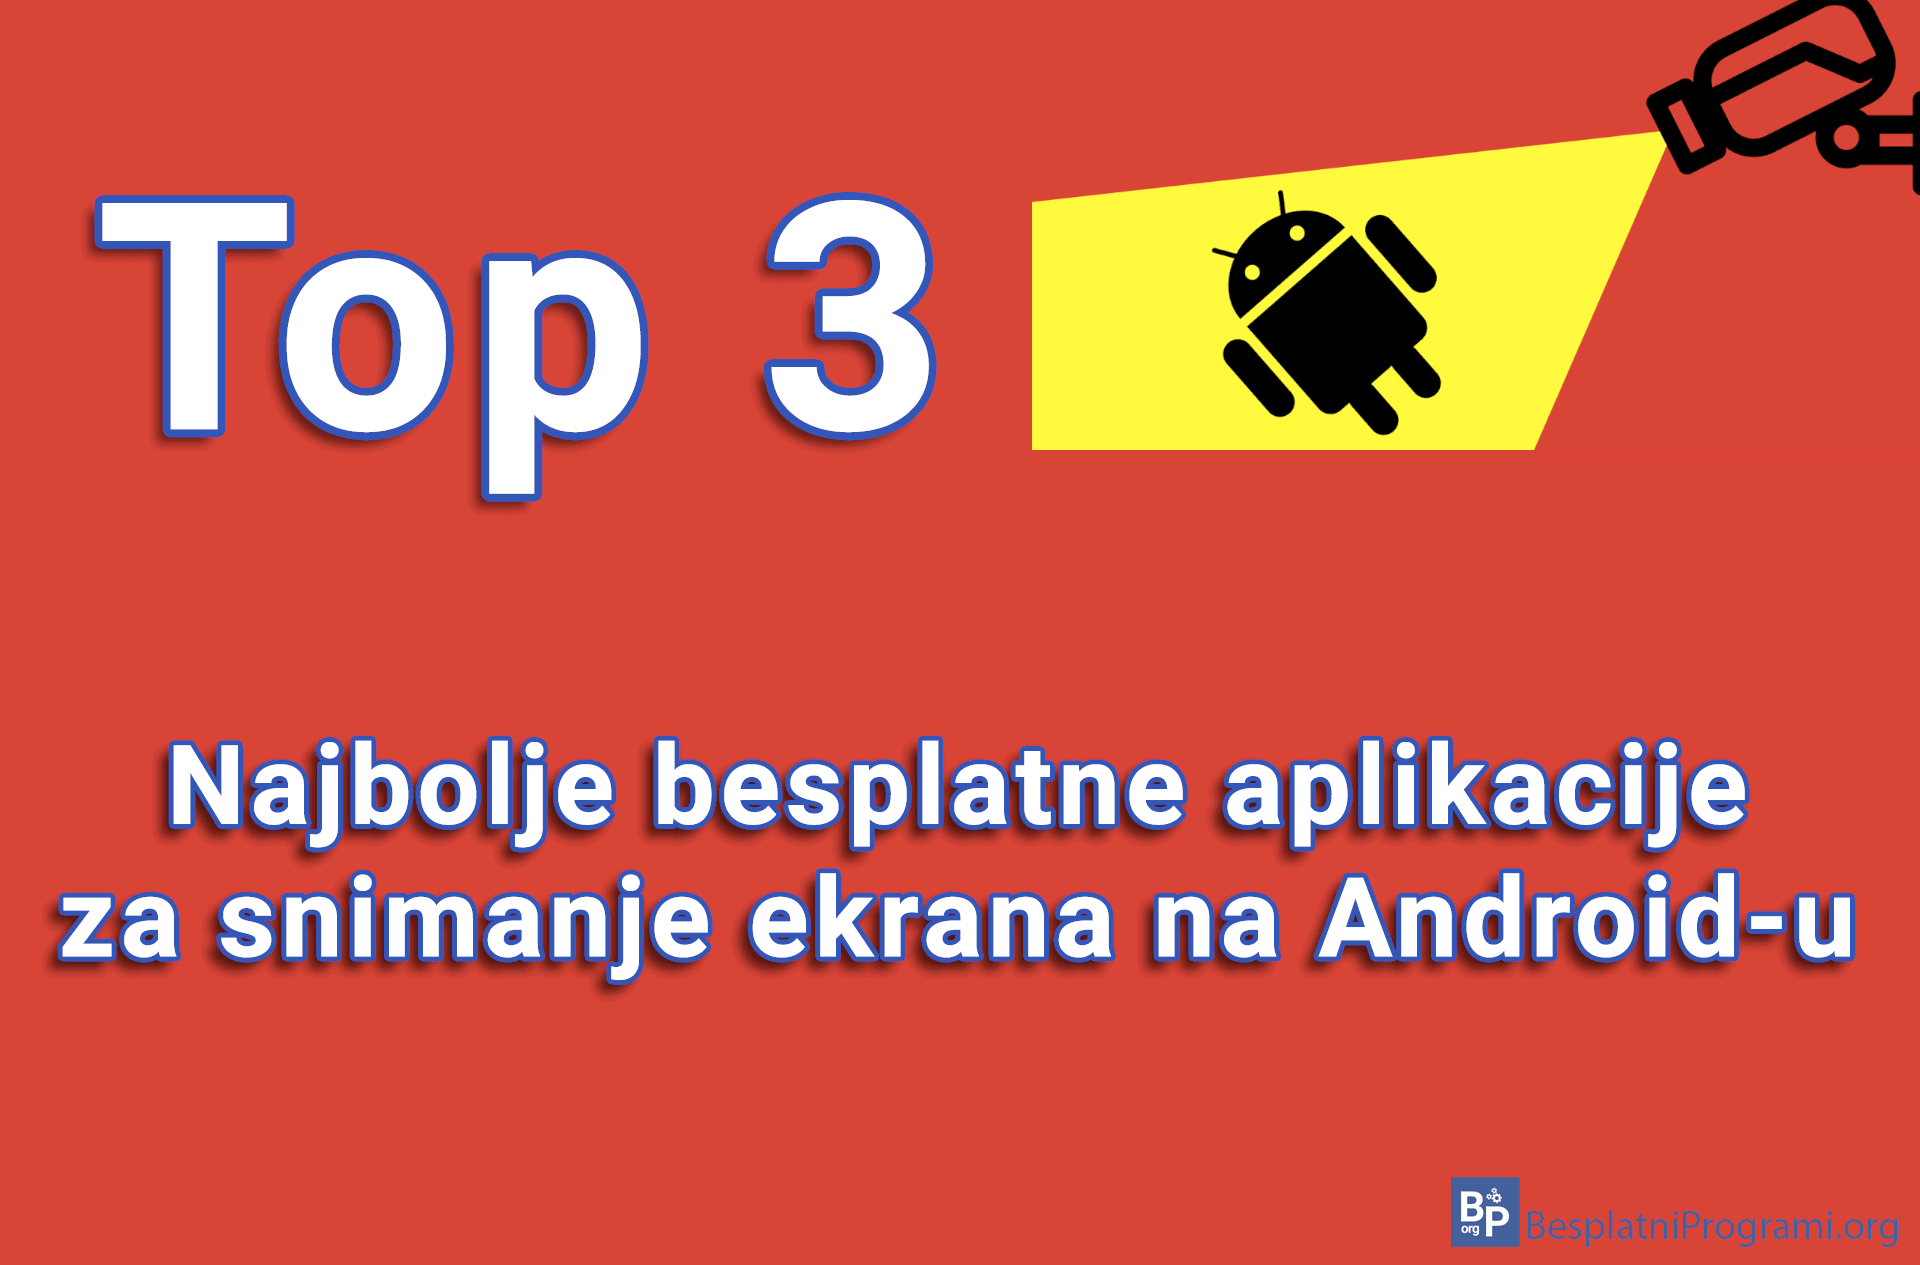 Top 3 najbolje besplatne aplikacije za snimanje ekrana na Android-u. 